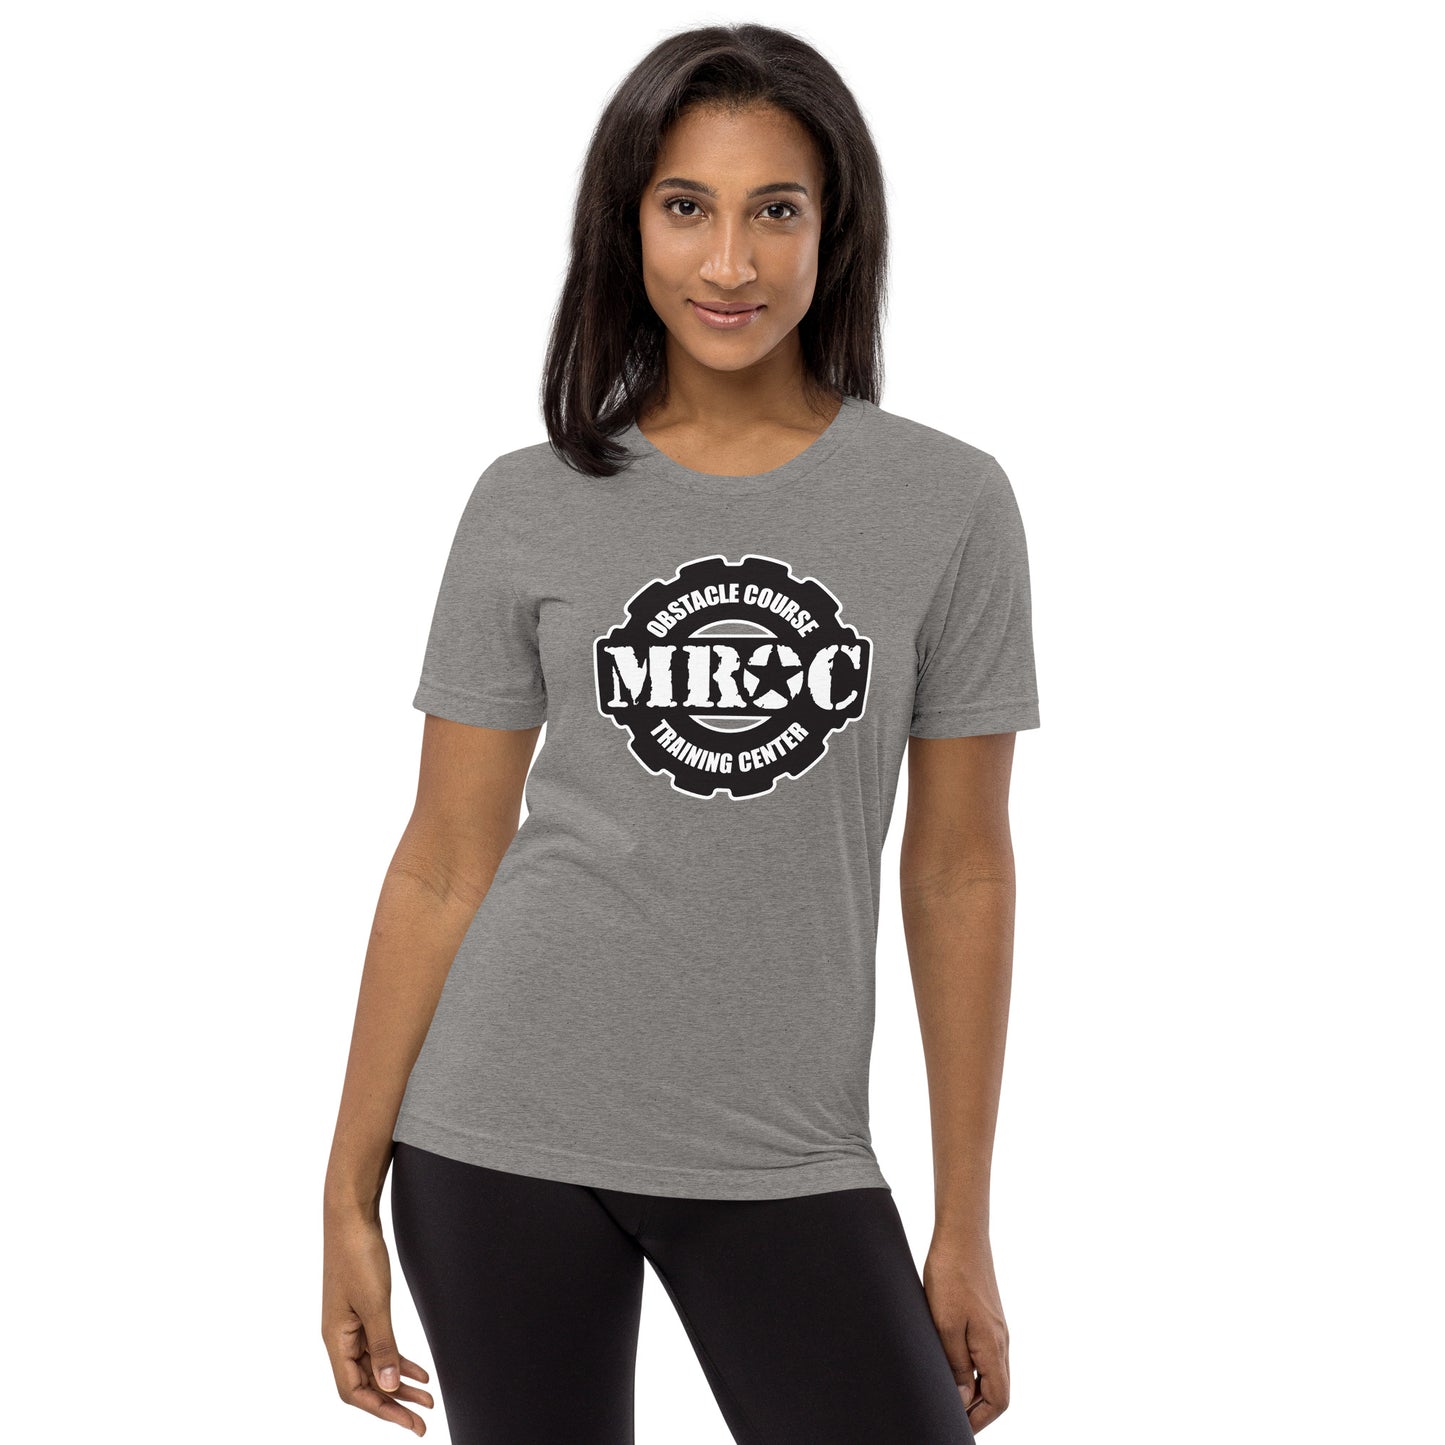 MROC Short sleeve Unisex t-shirt (SUPER SOFT)